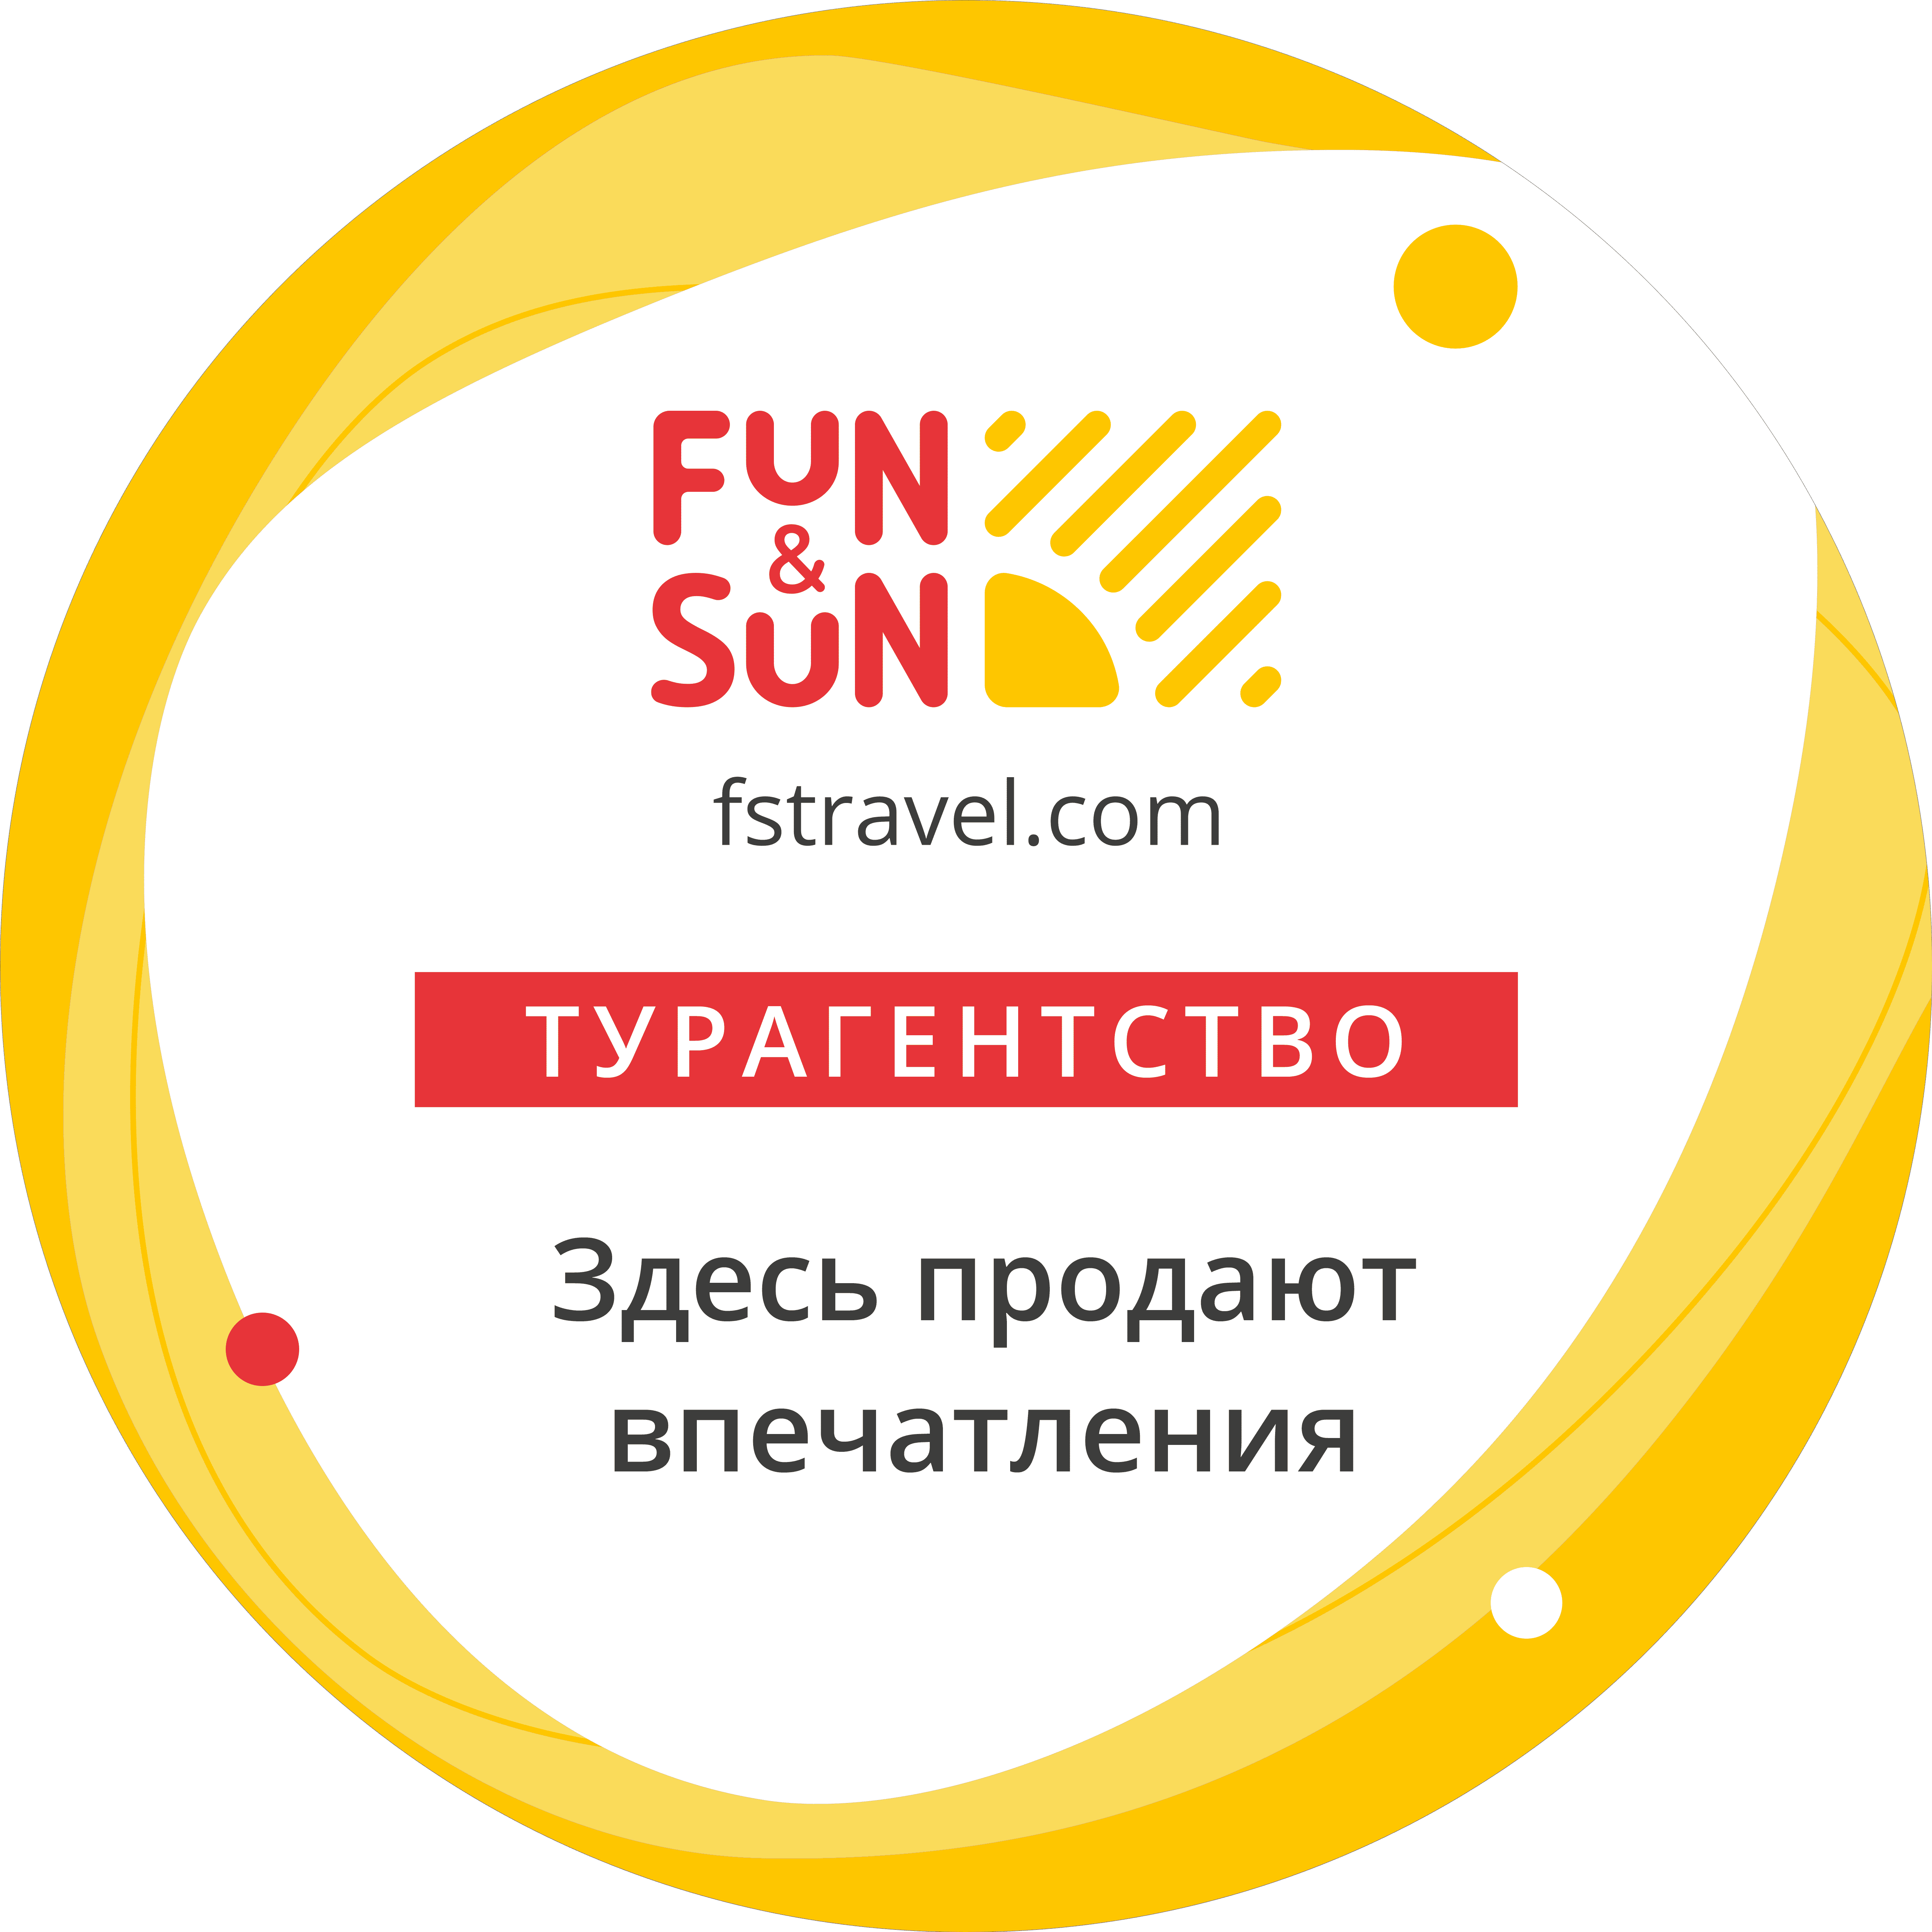 Фан и сан. Фан Сан туроператор. Fun Sun туроператор. Туркомпания fun Sun. Fun Sun туроператор лого.